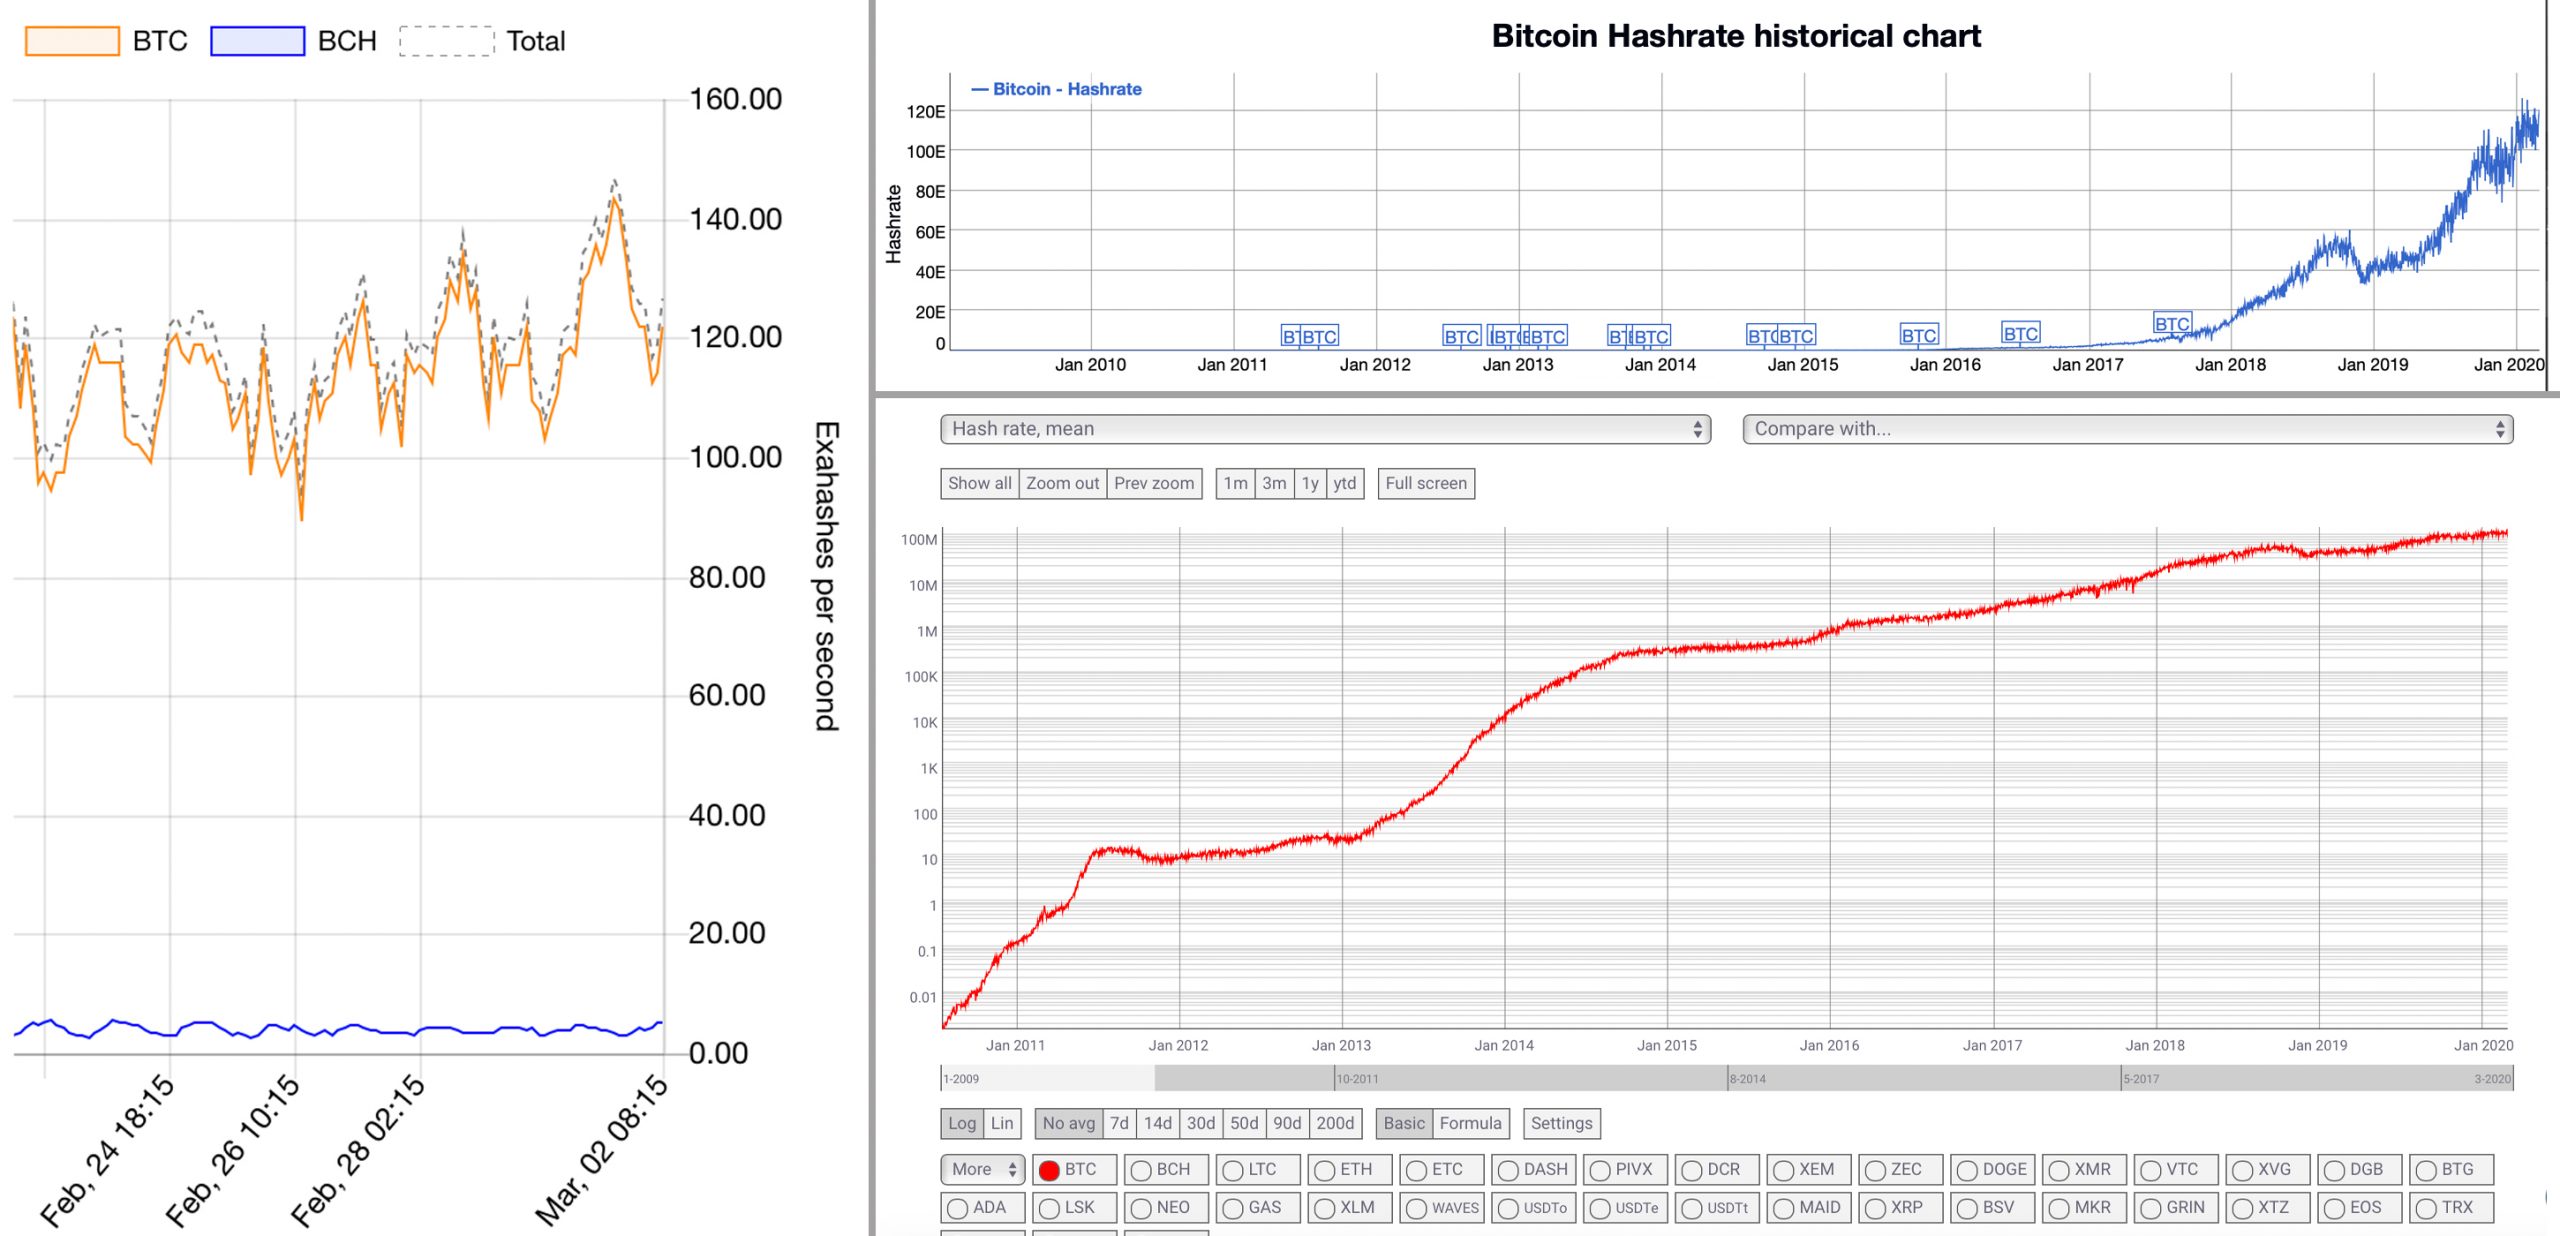 Bitcoin Mining Investment stærk - BTC Hashrate overgår all-time high